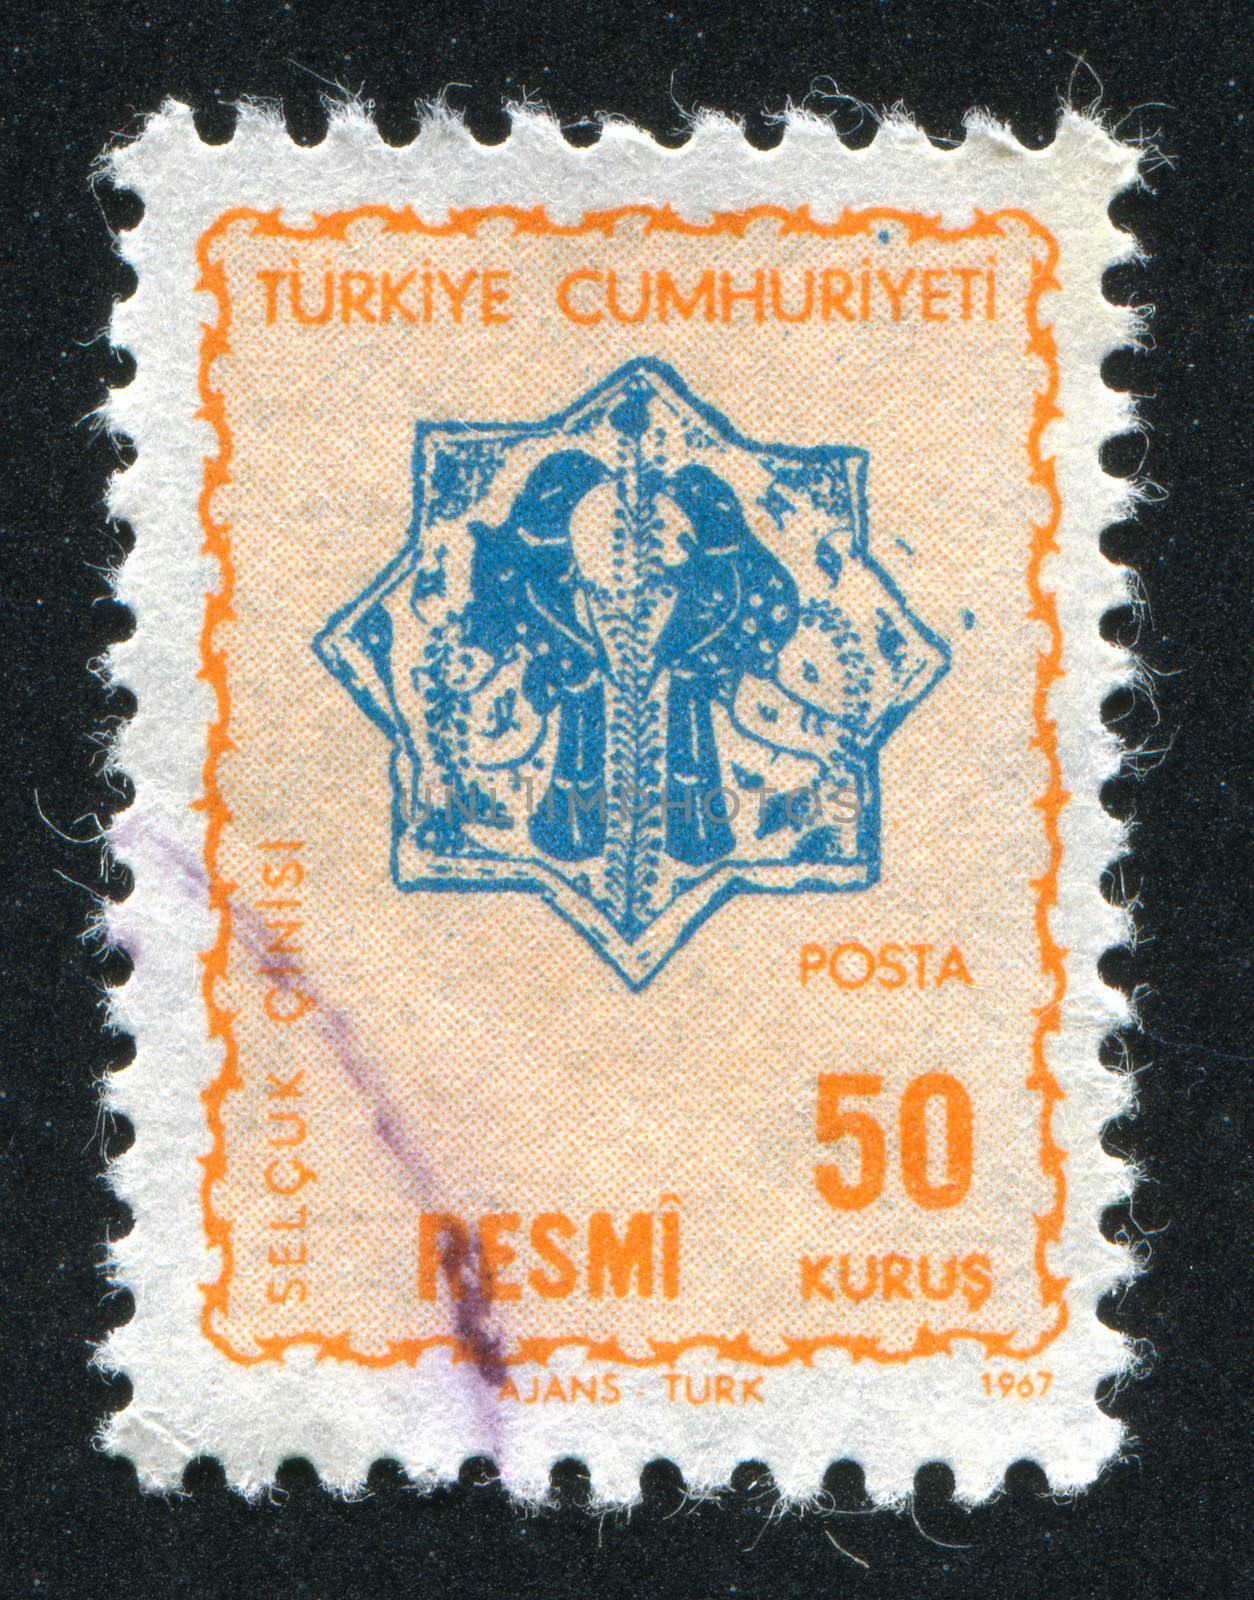 TURKEY - CIRCA 1967: stamp printed by Turkey, shows turkish pattern, circa 1967.